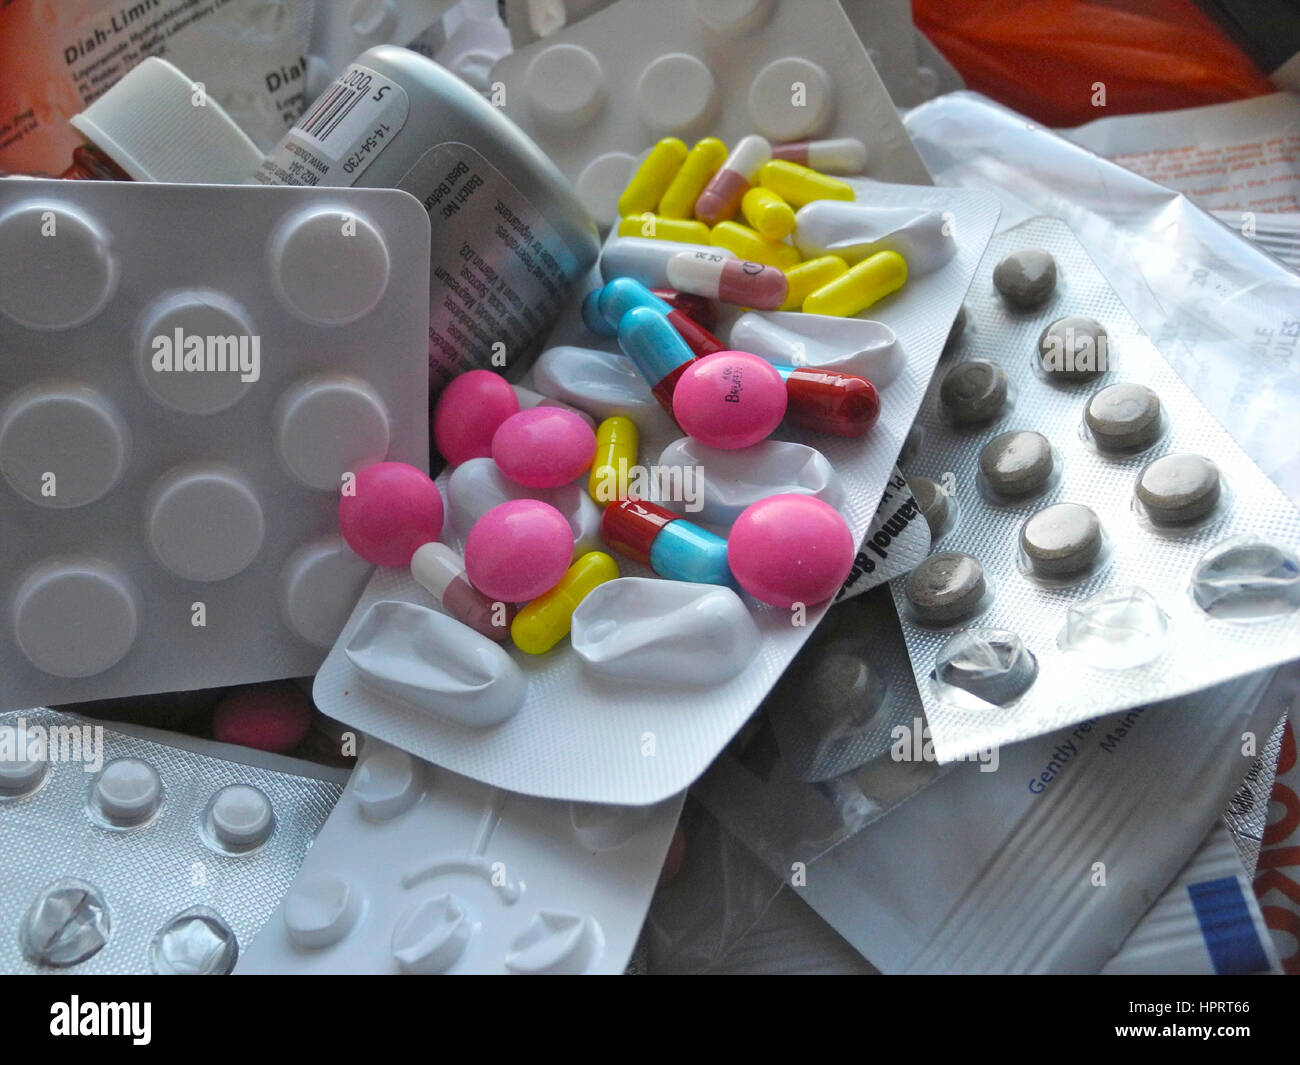 Gibt es eine massive Verschwendung von Ressourcen in die Reihe von verschreibungspflichtigen Medikamenten Tabletten Medikamente Medikamente Pillen die vorgeschriebenen, aber ungenutzt durch Patienten sind, die Kosten zu den National Health Service (NHS) in Großbritannien sind enorm. Stockfoto